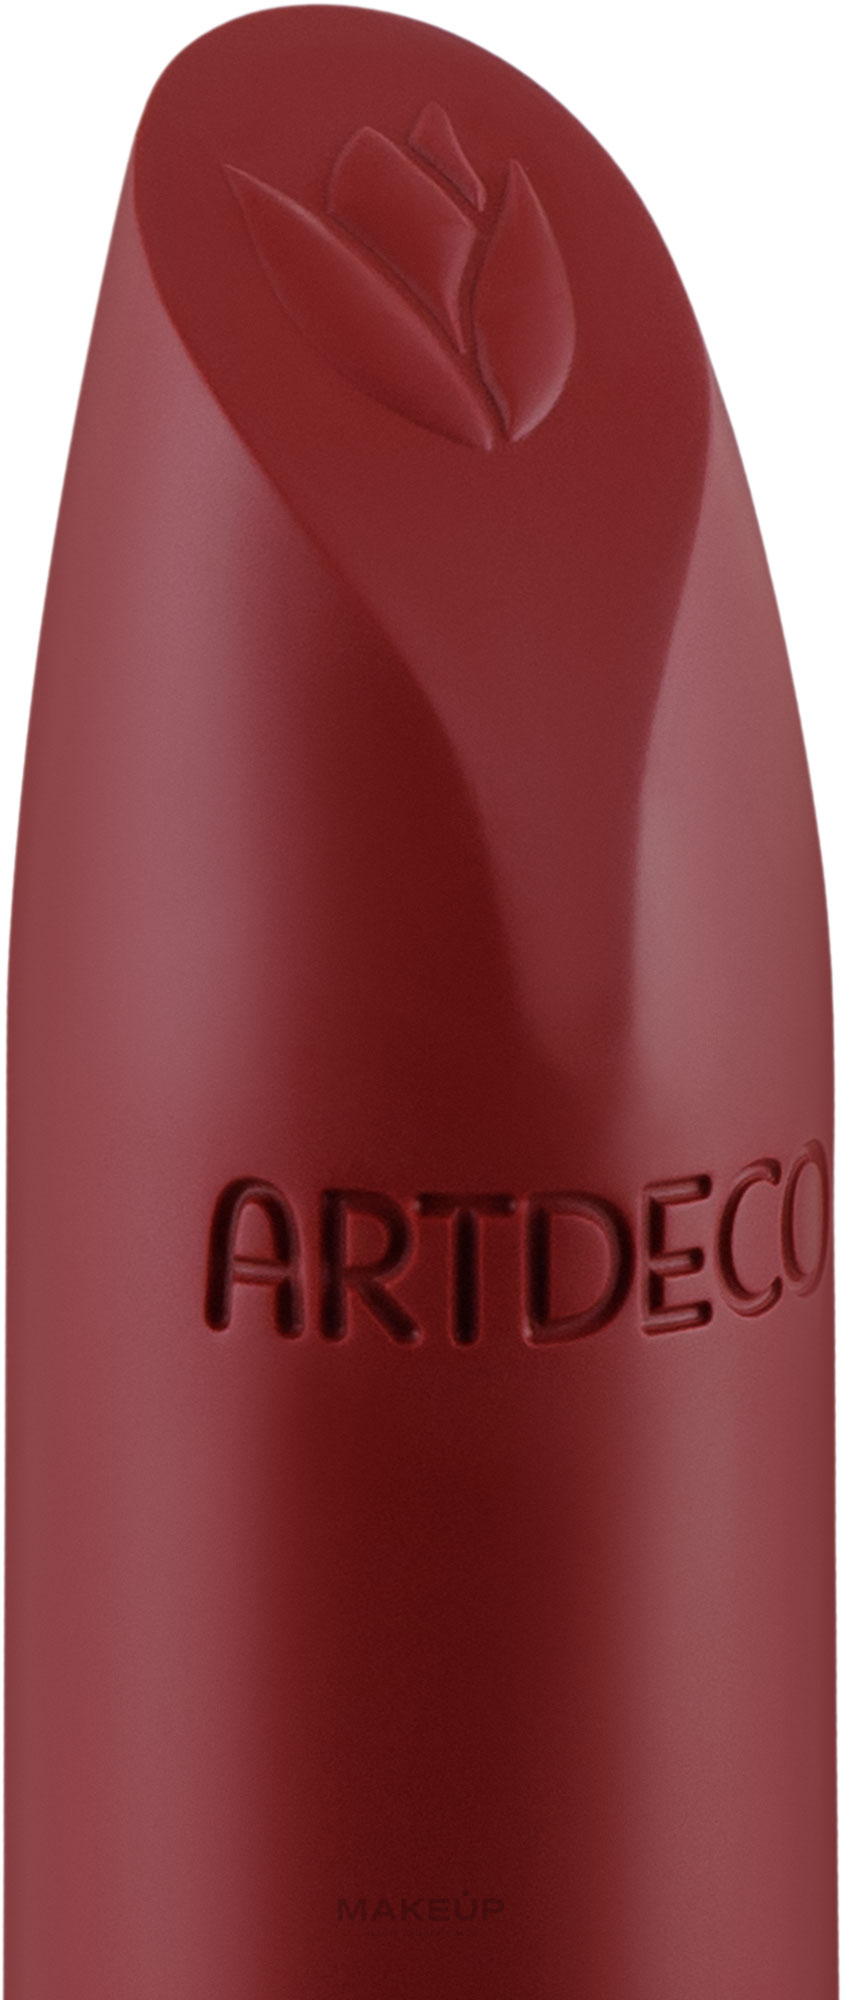 Кремовая помада для губ - Artdeco Natural Cream Lipstick — фото 604 - Rose Bouquet